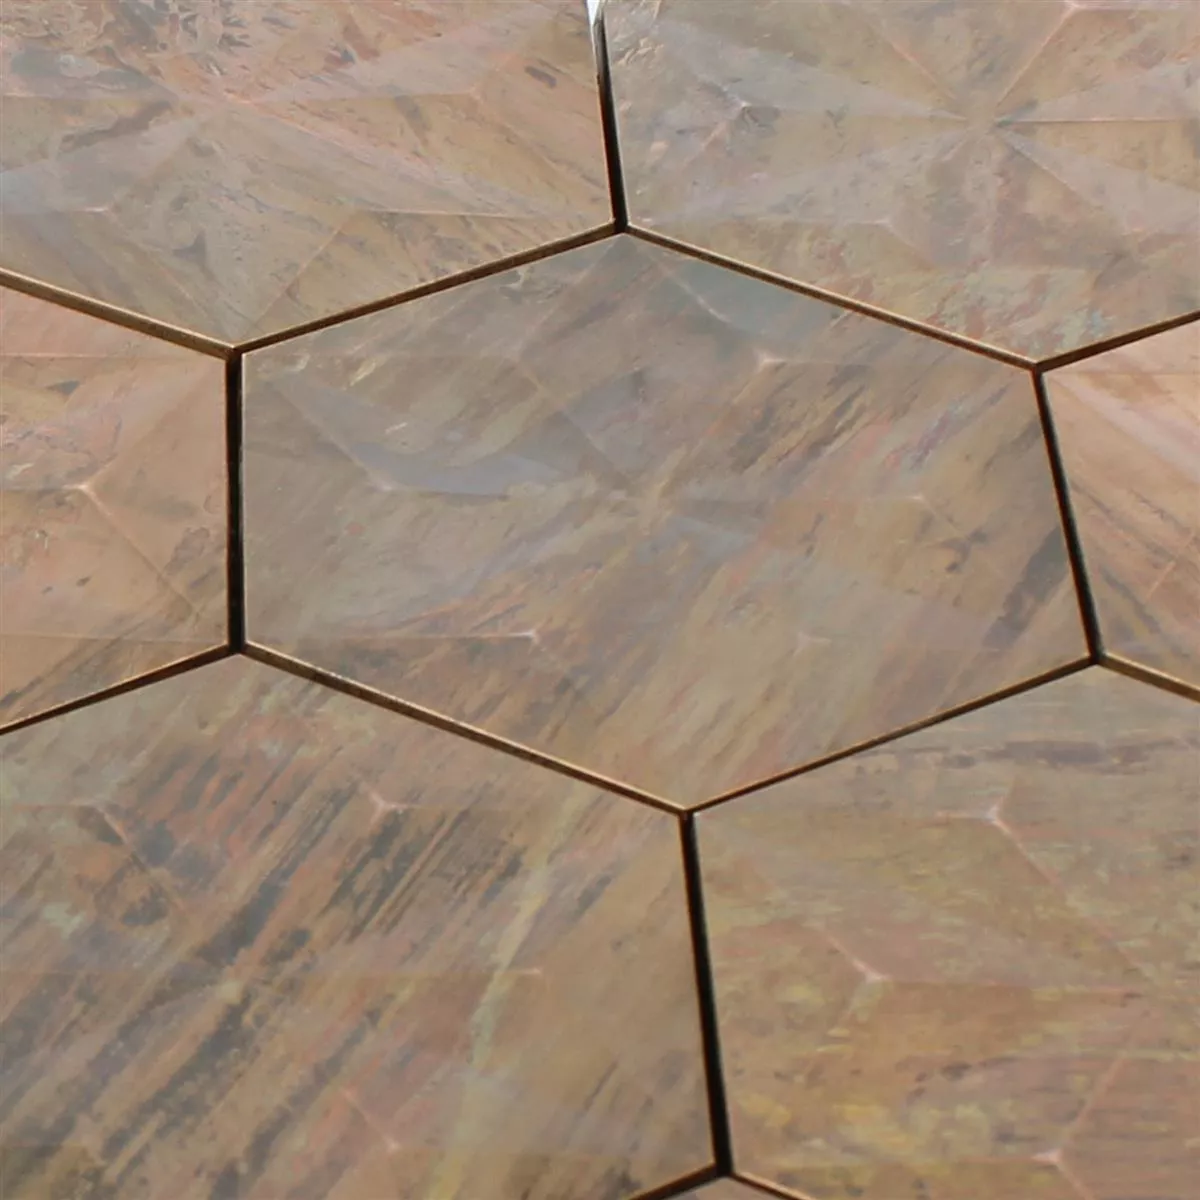 Metall Kupfer Mosaikfliesen Myron Hexagon 3D